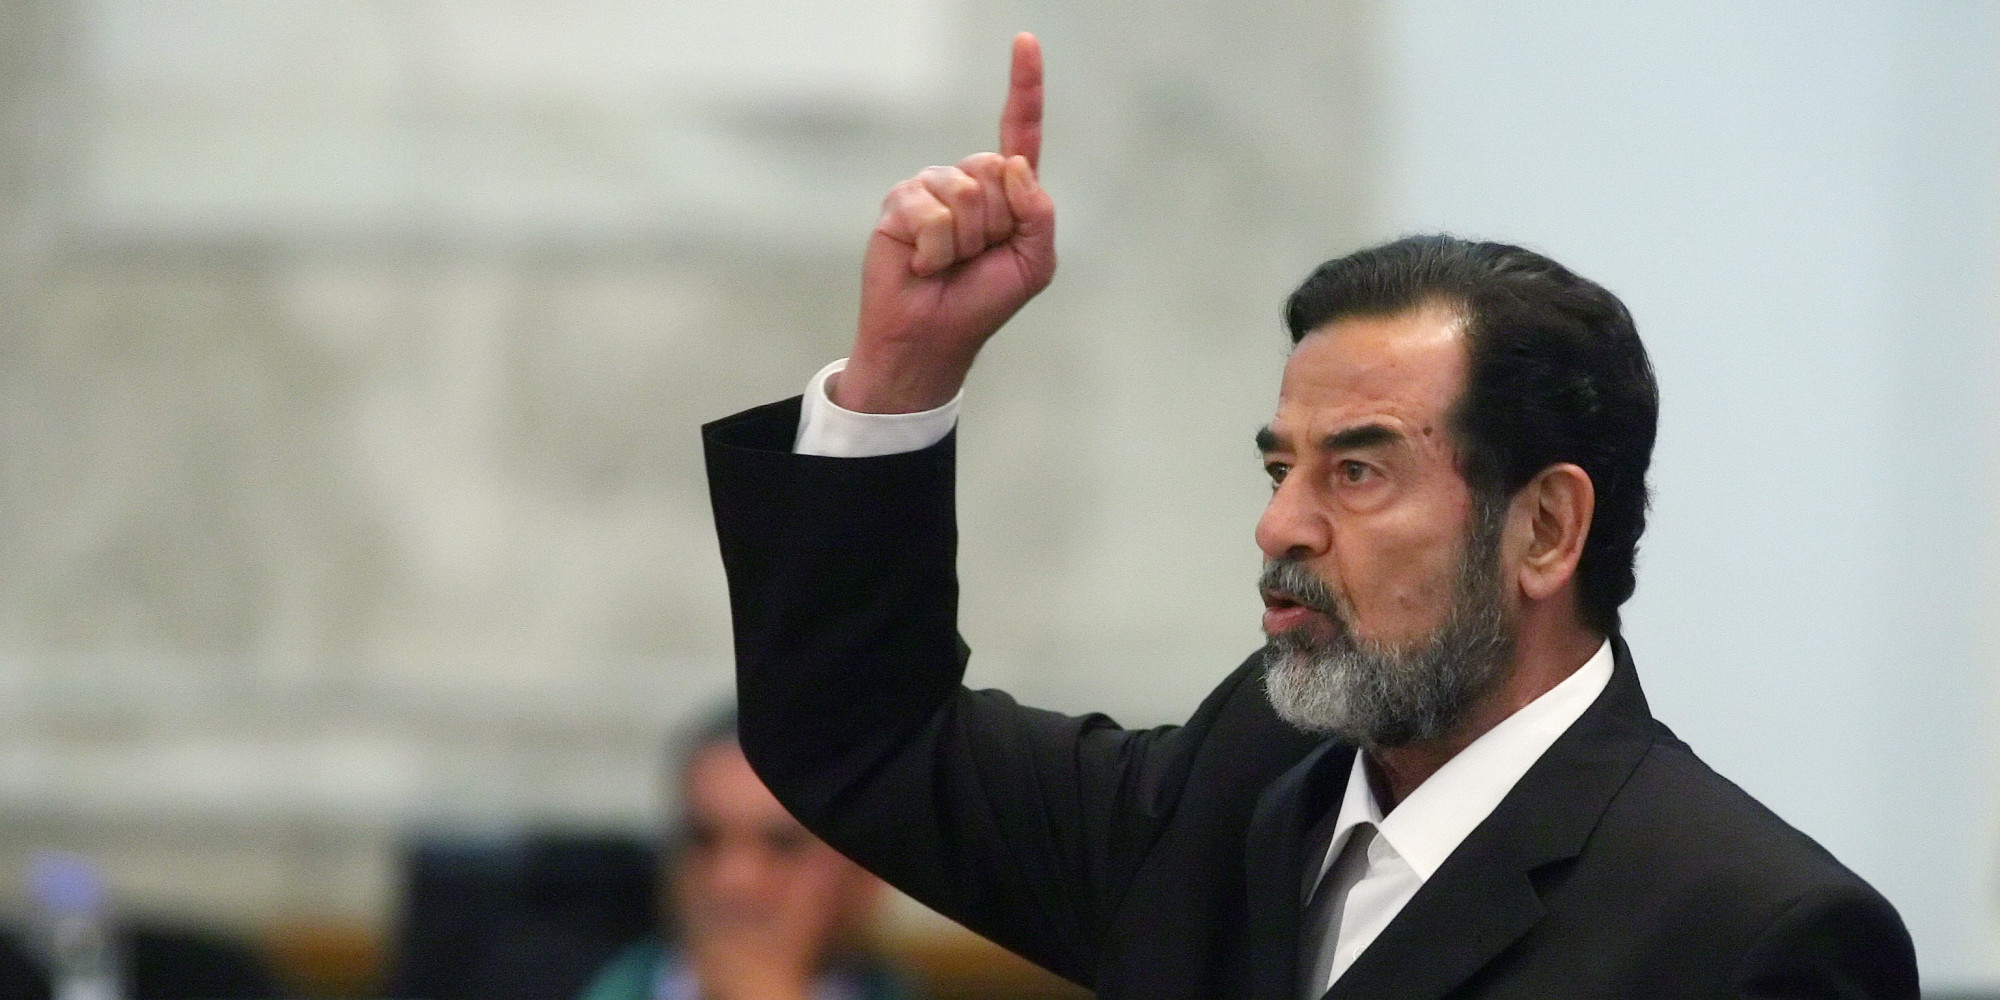 De ondervraging van Saddam Hoessein